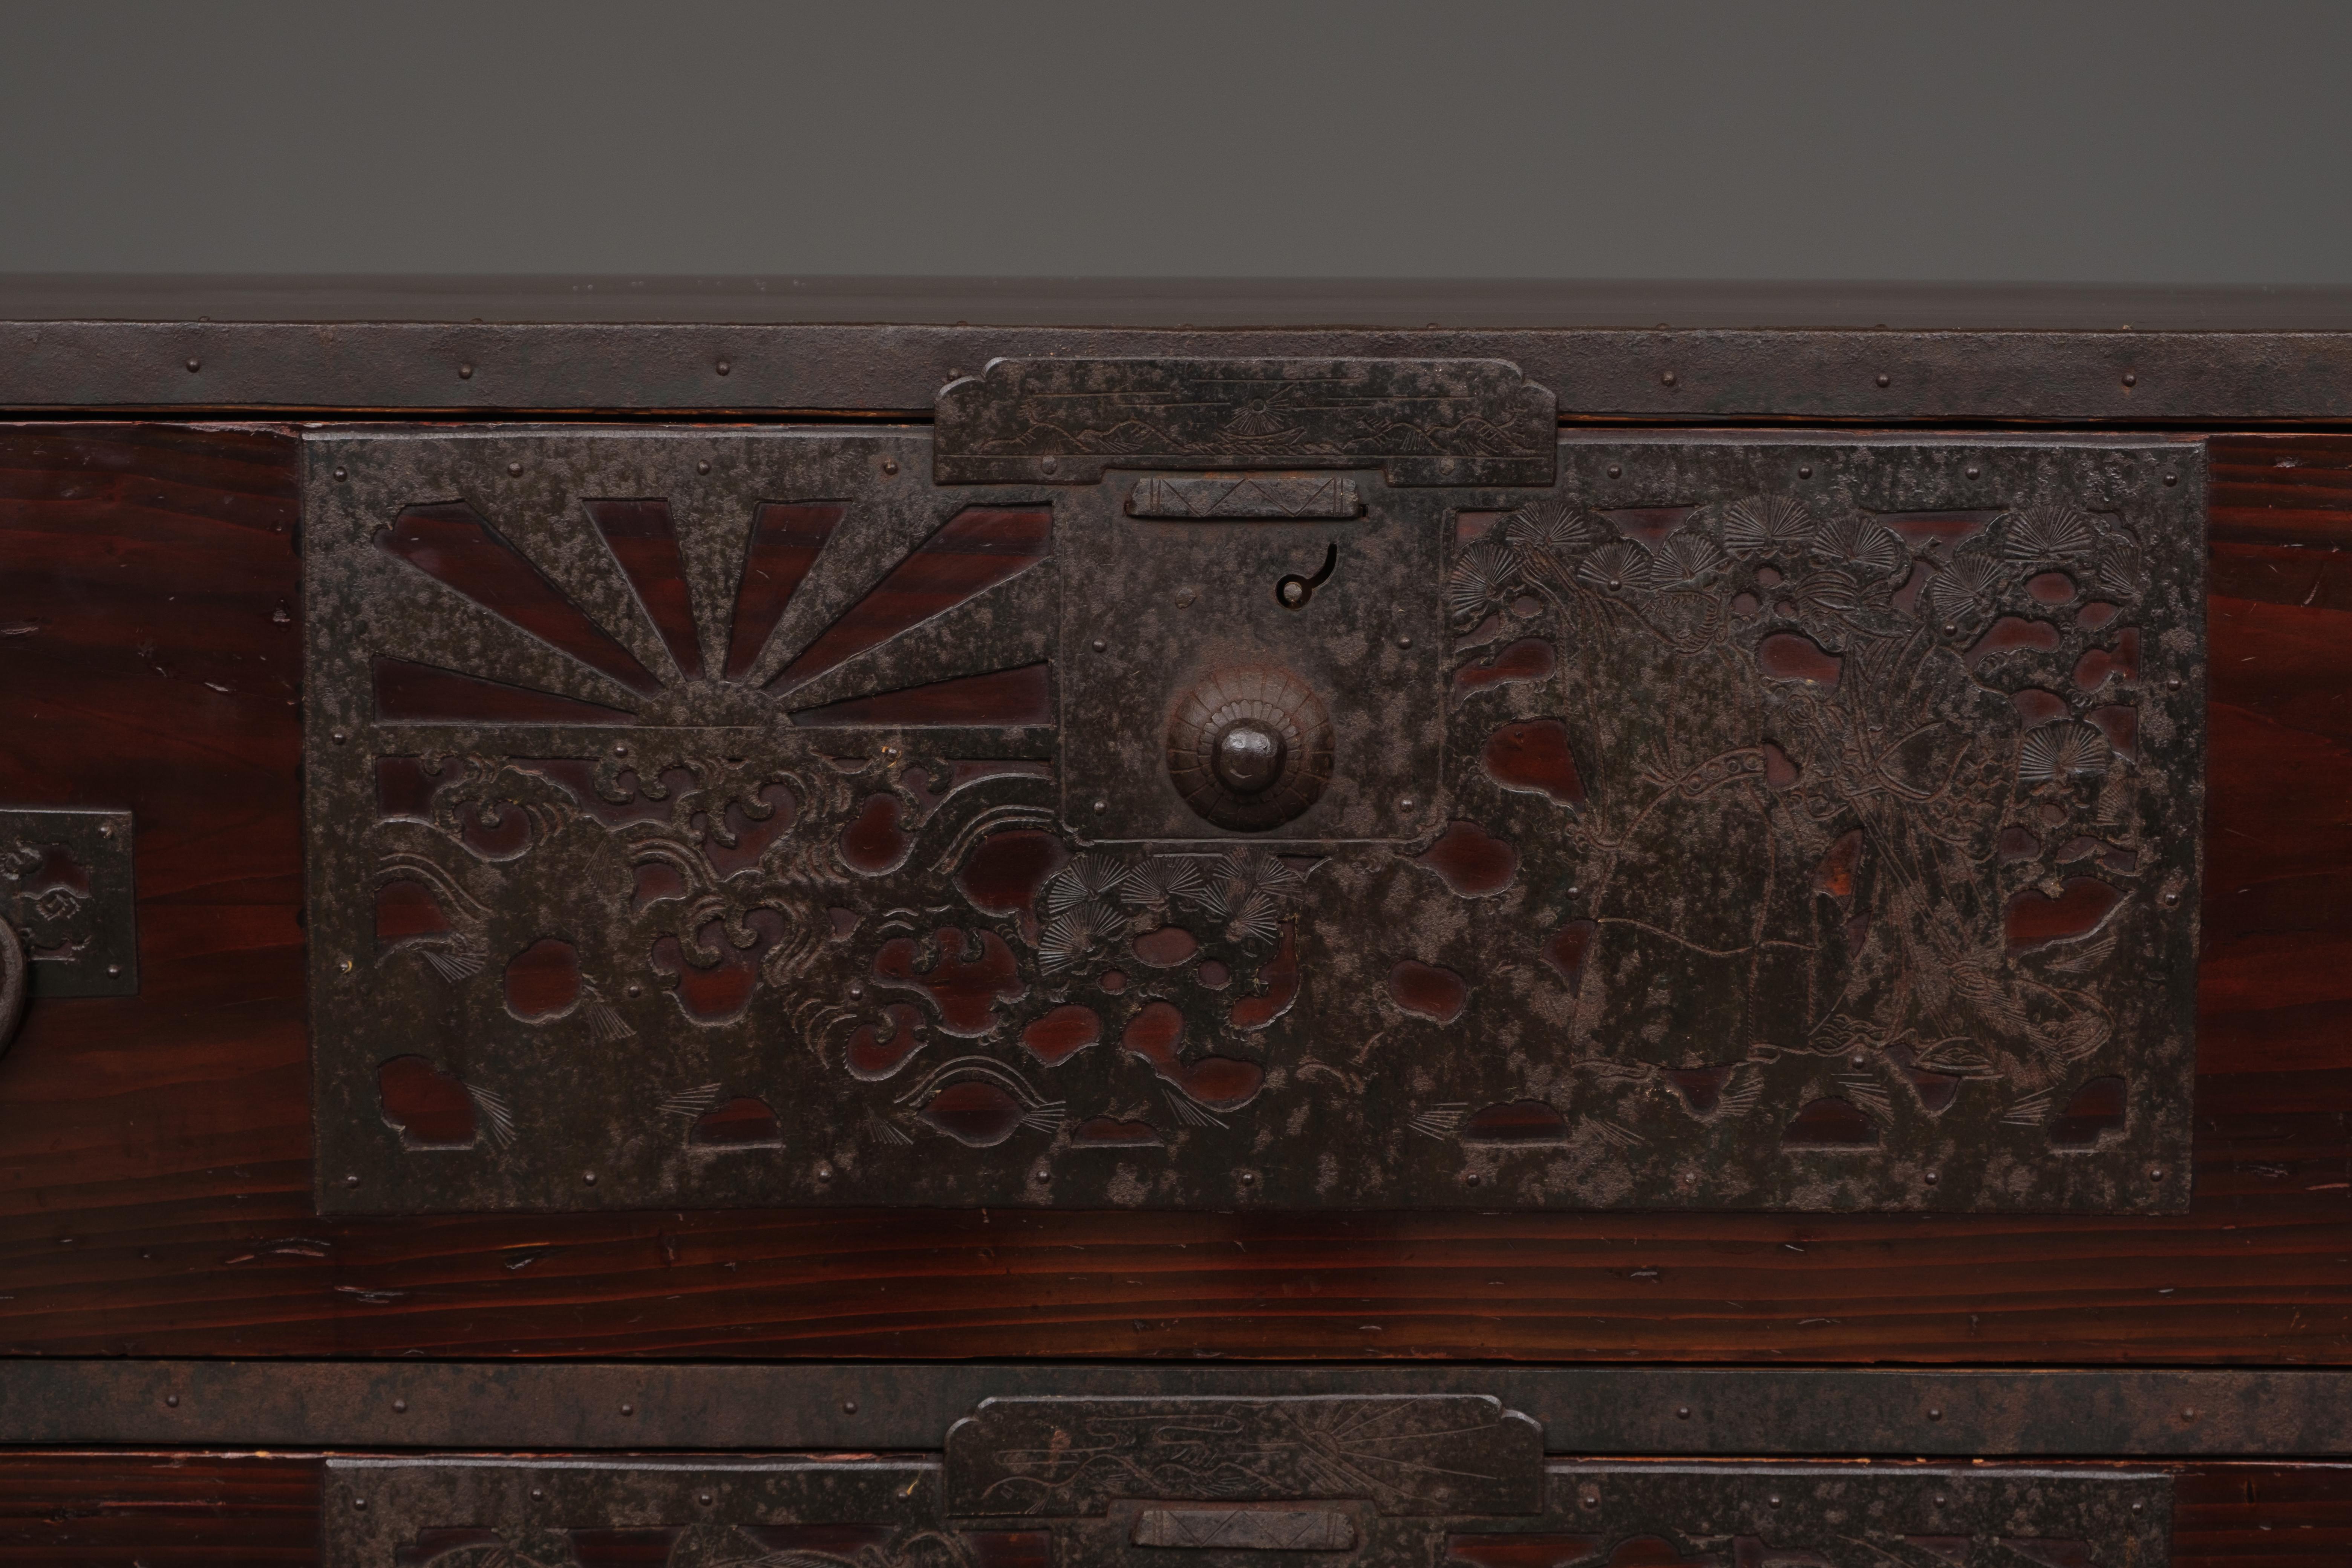 Ishô'dansu (meuble à tiroirs) en bois de Sado de haute qualité, en deux parties. Lourdement habillée de ferrures décoratives, elle présente des motifs riches et un petit secret. Entièrement restauré, nettoyé et ciré.

Les faces des tiroirs sont en